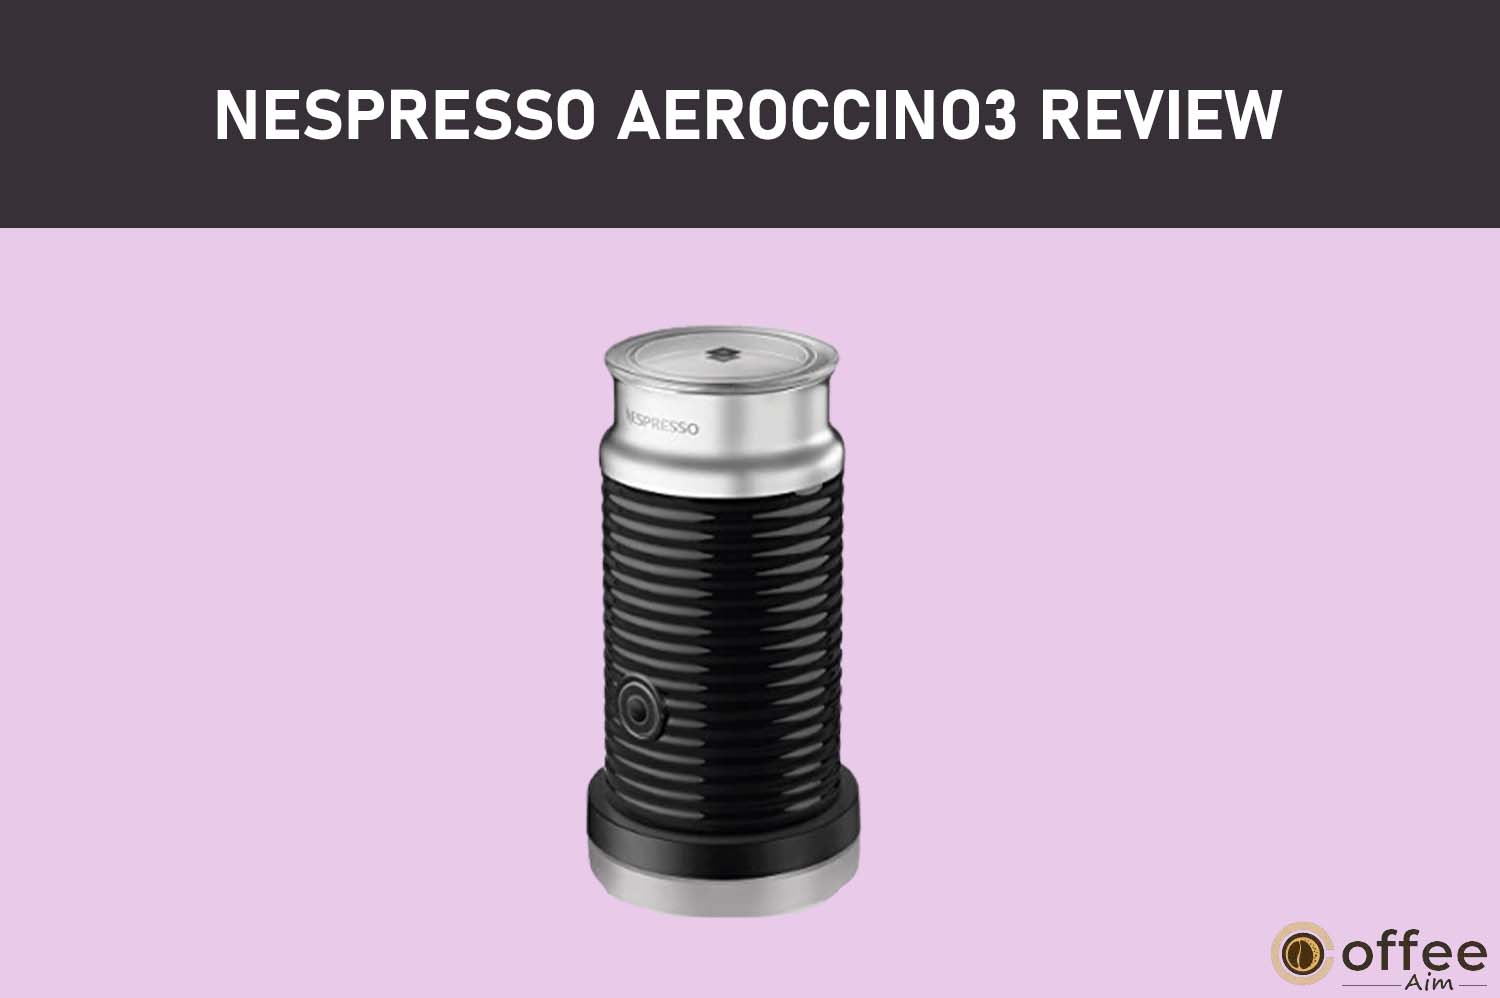 https://coffeeaim.com/wp-content/uploads/2022/08/Nespresso-Aeroccino3-Review.jpg